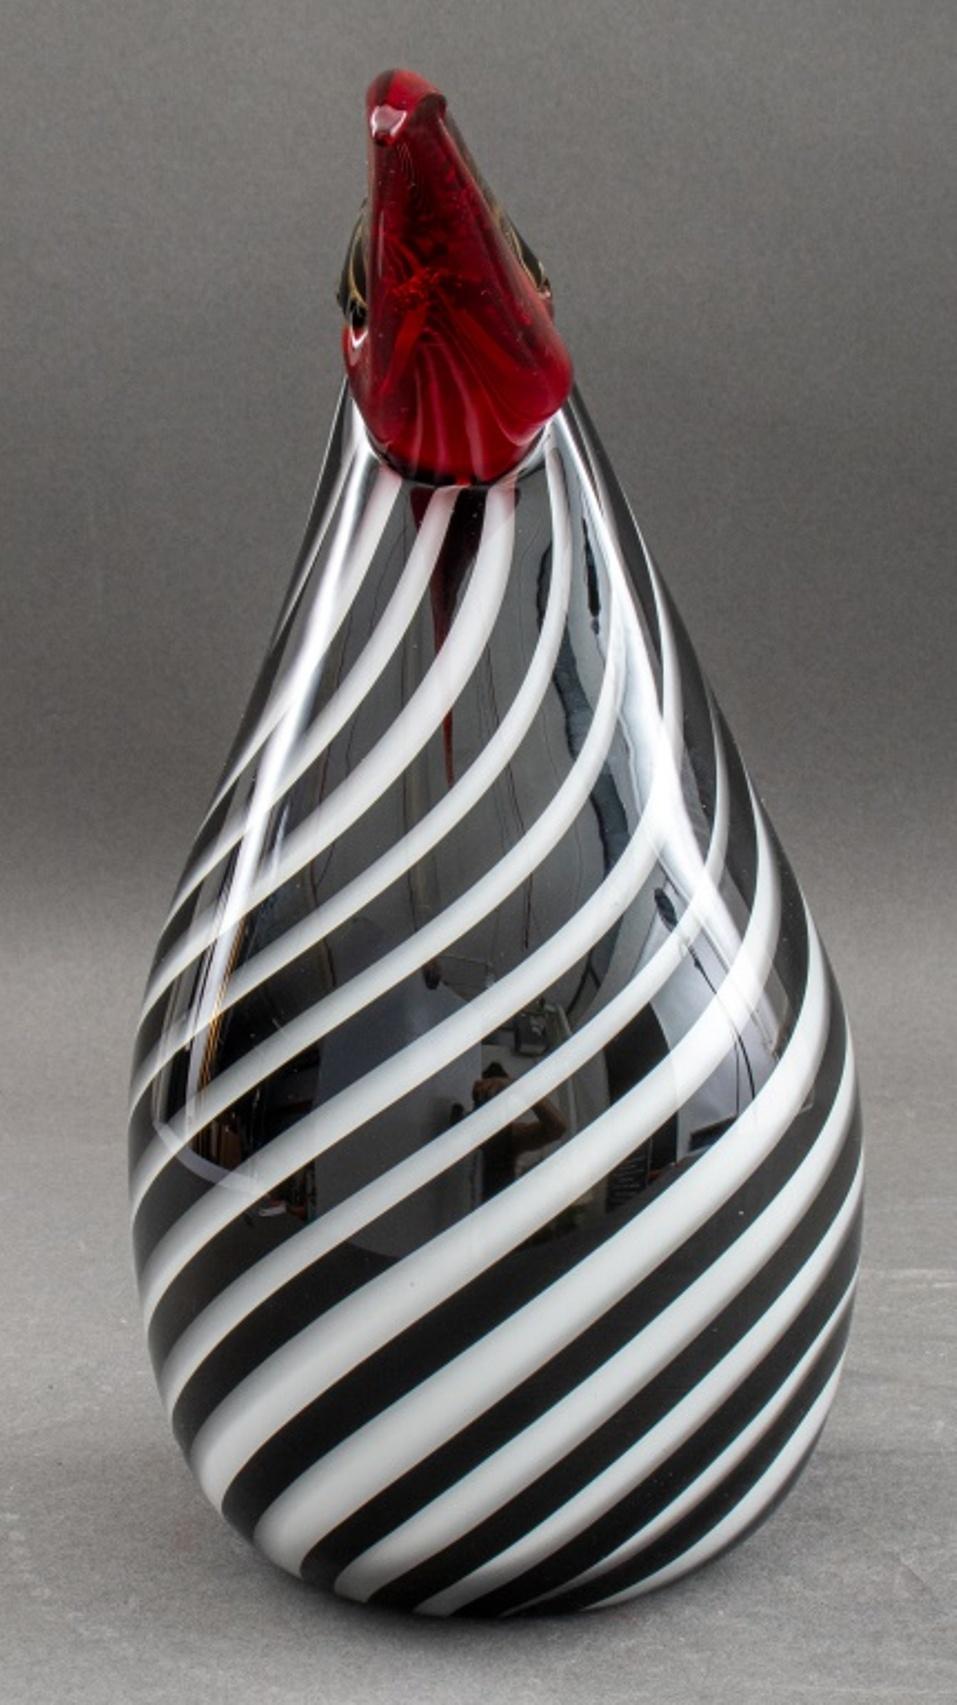 Figurine de toucan vénitien en verre de Murano, le corps en verre soufflé en spirale noir et blanc avec un bec écarlate et or, apparemment non marqué. 

Dimensions : 9,5